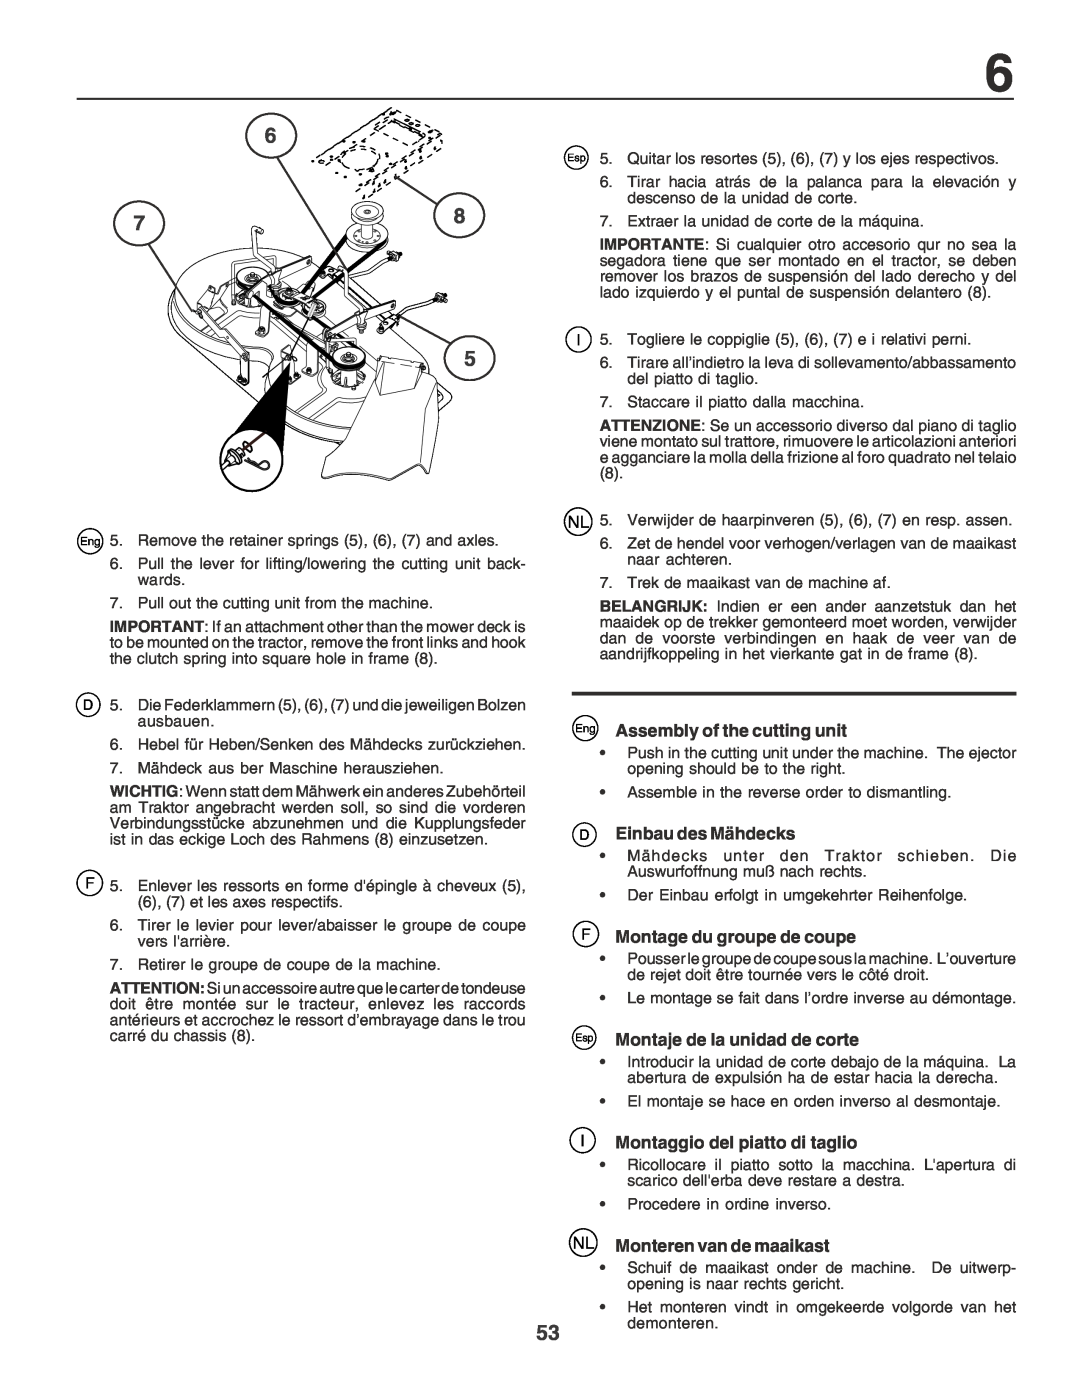 Husqvarna LT135 instruction manual Eng Assembly of the cutting unit, Einbau des Mähdecks, F Montage du groupe de coupe 